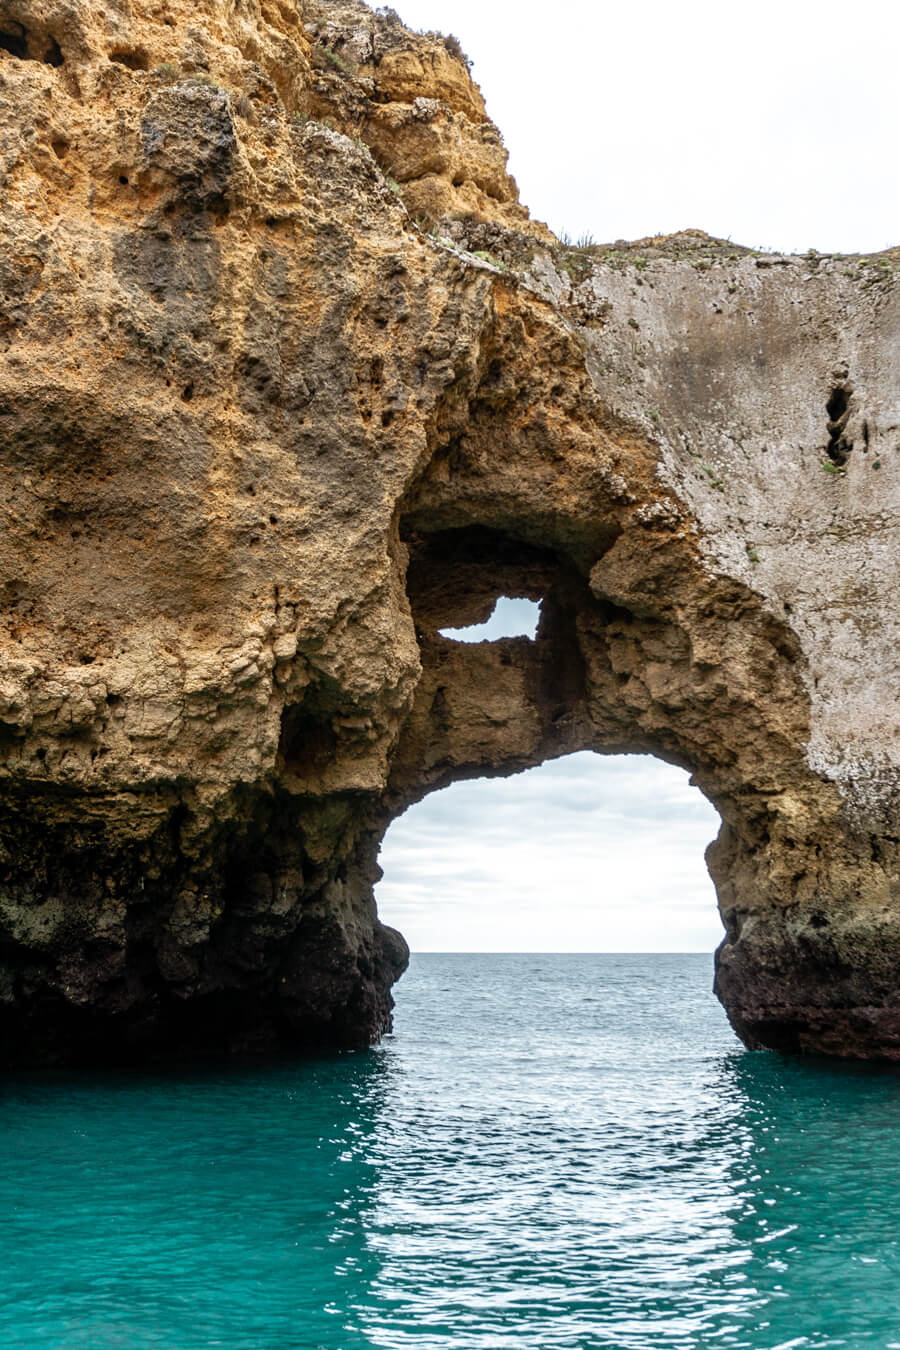 Cliffs near Lagos, Portugal.